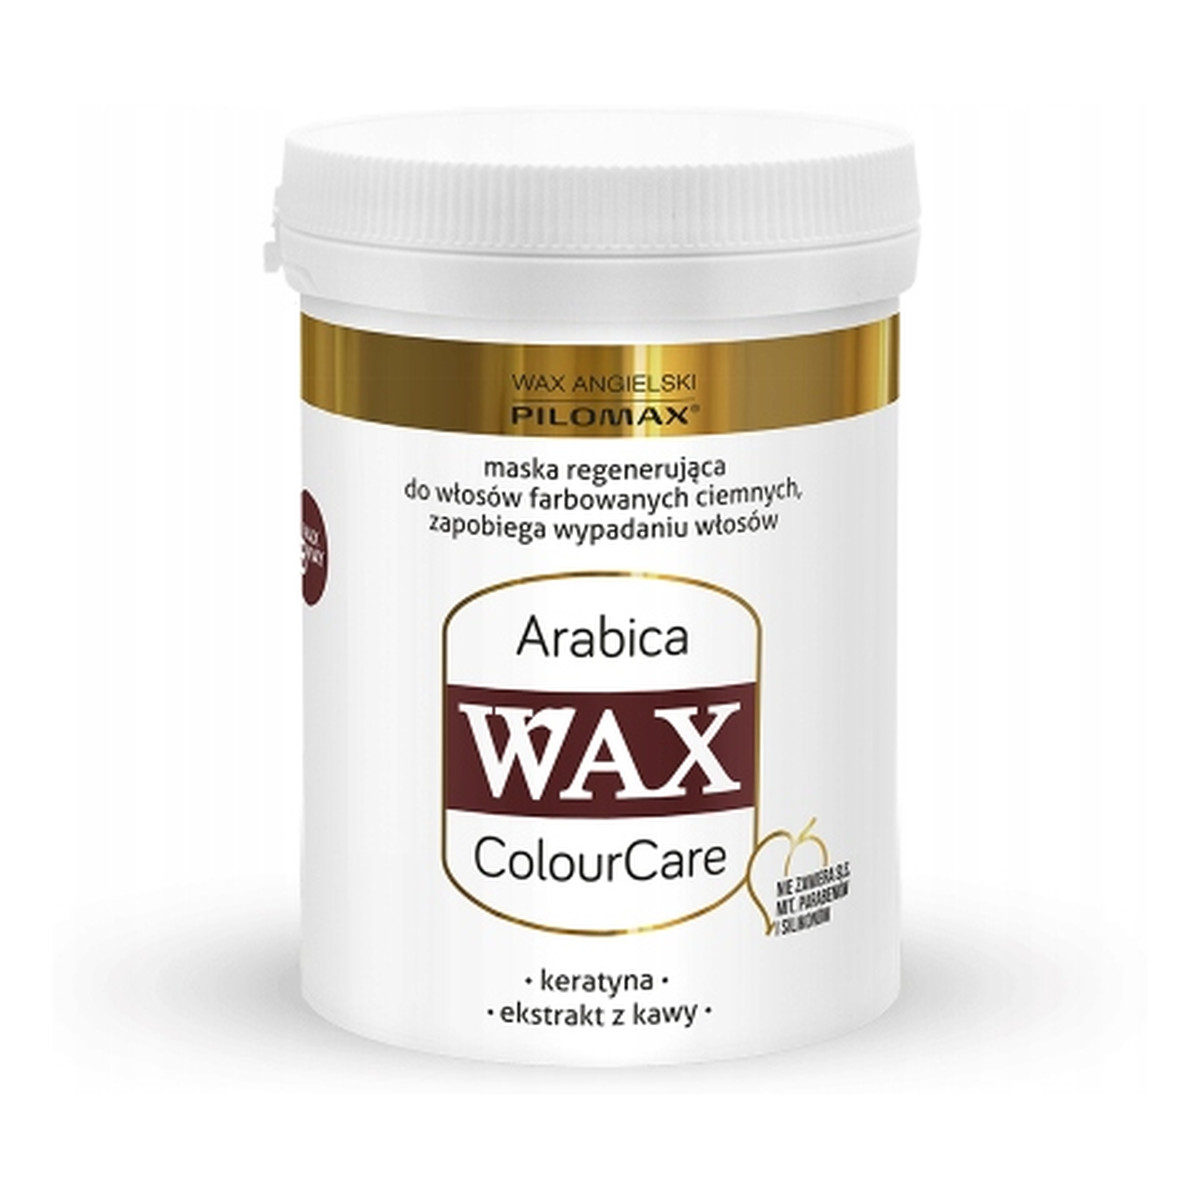 Pilomax Wax Colour Care Arabica Maska Regenerująca Do Włosów Farbowanych ciemne kolory 240ml